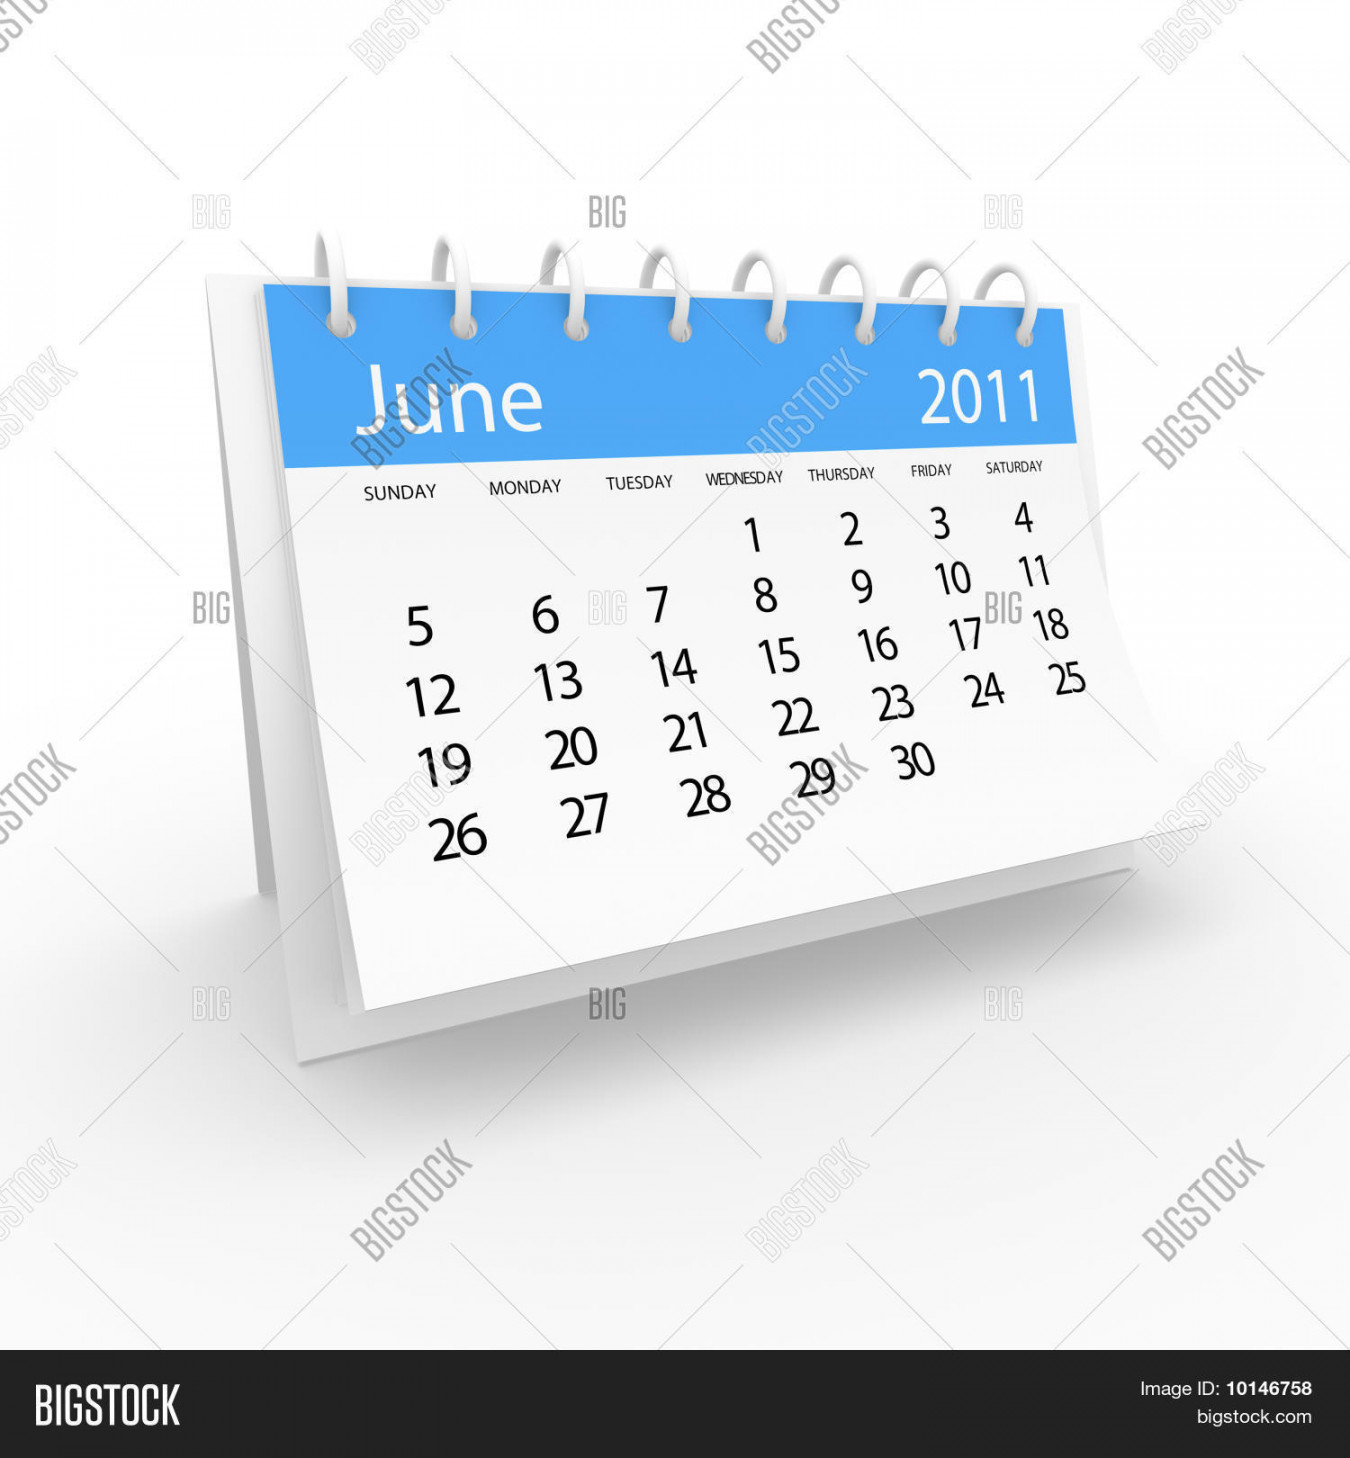 Calendar  June Image & Photo (Free Trial)  Bigstock